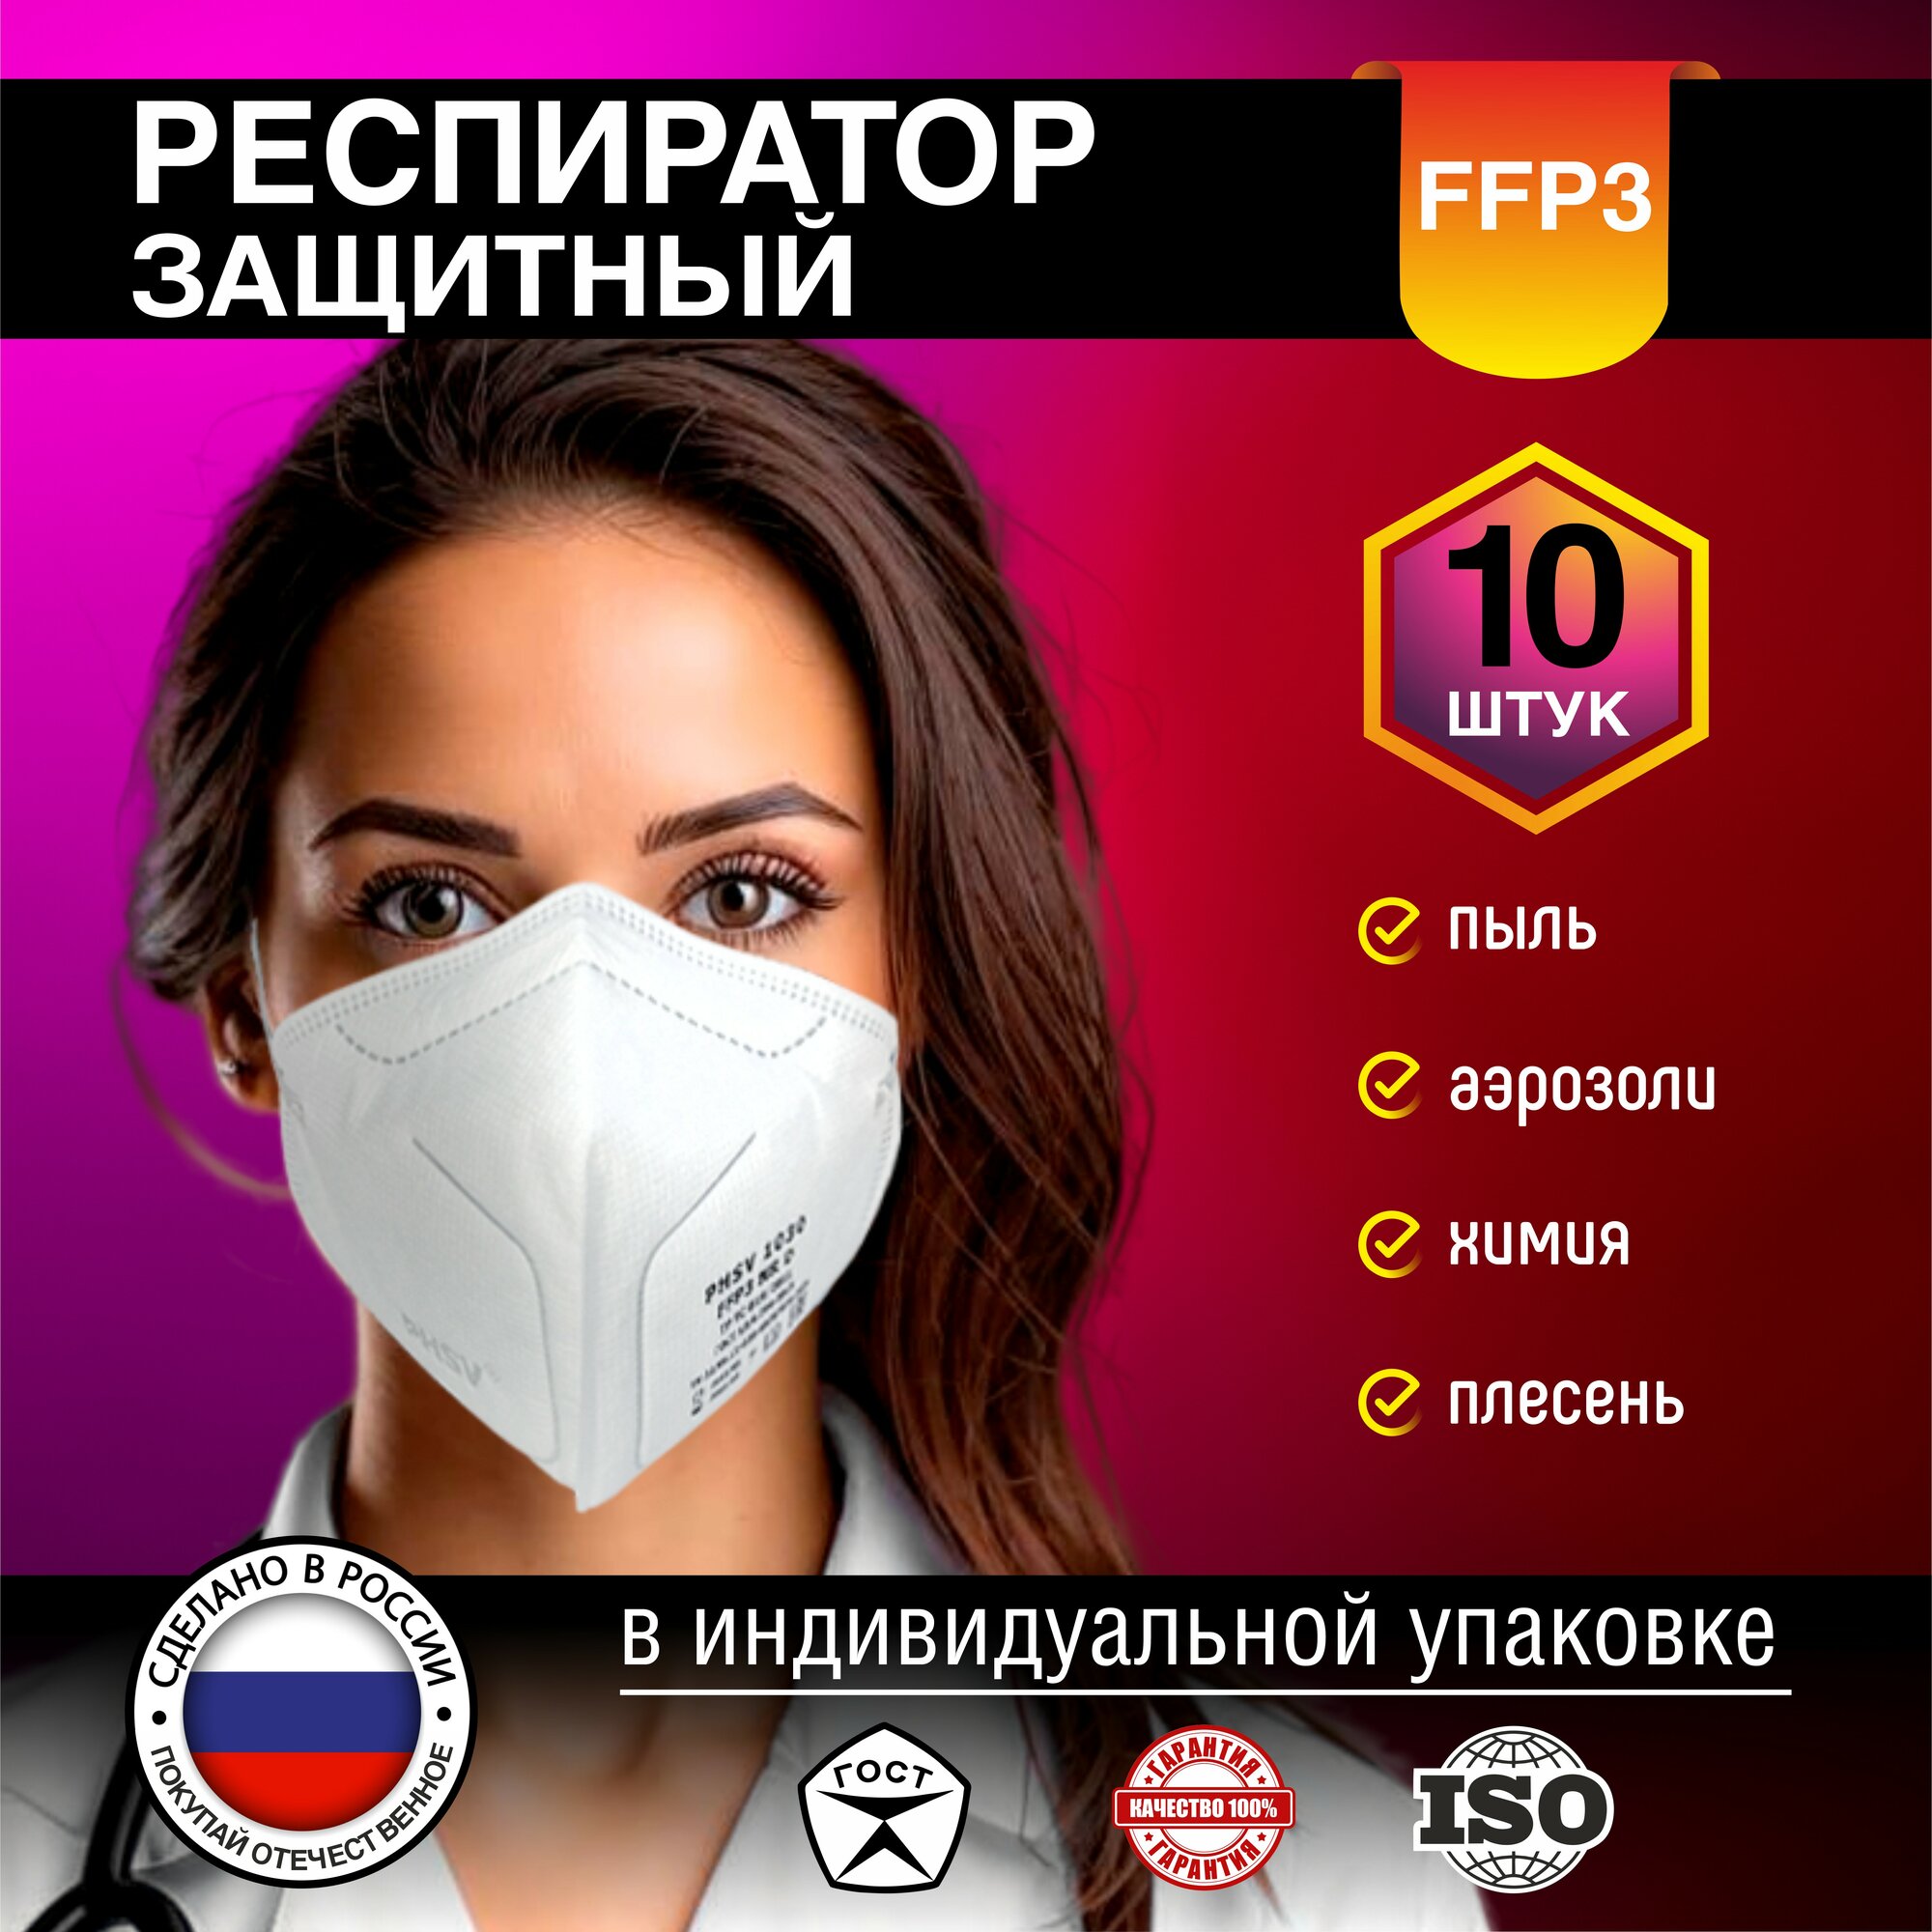 Респиратор - маска универсальная FFP3 от аллергии, пыли и химических веществ